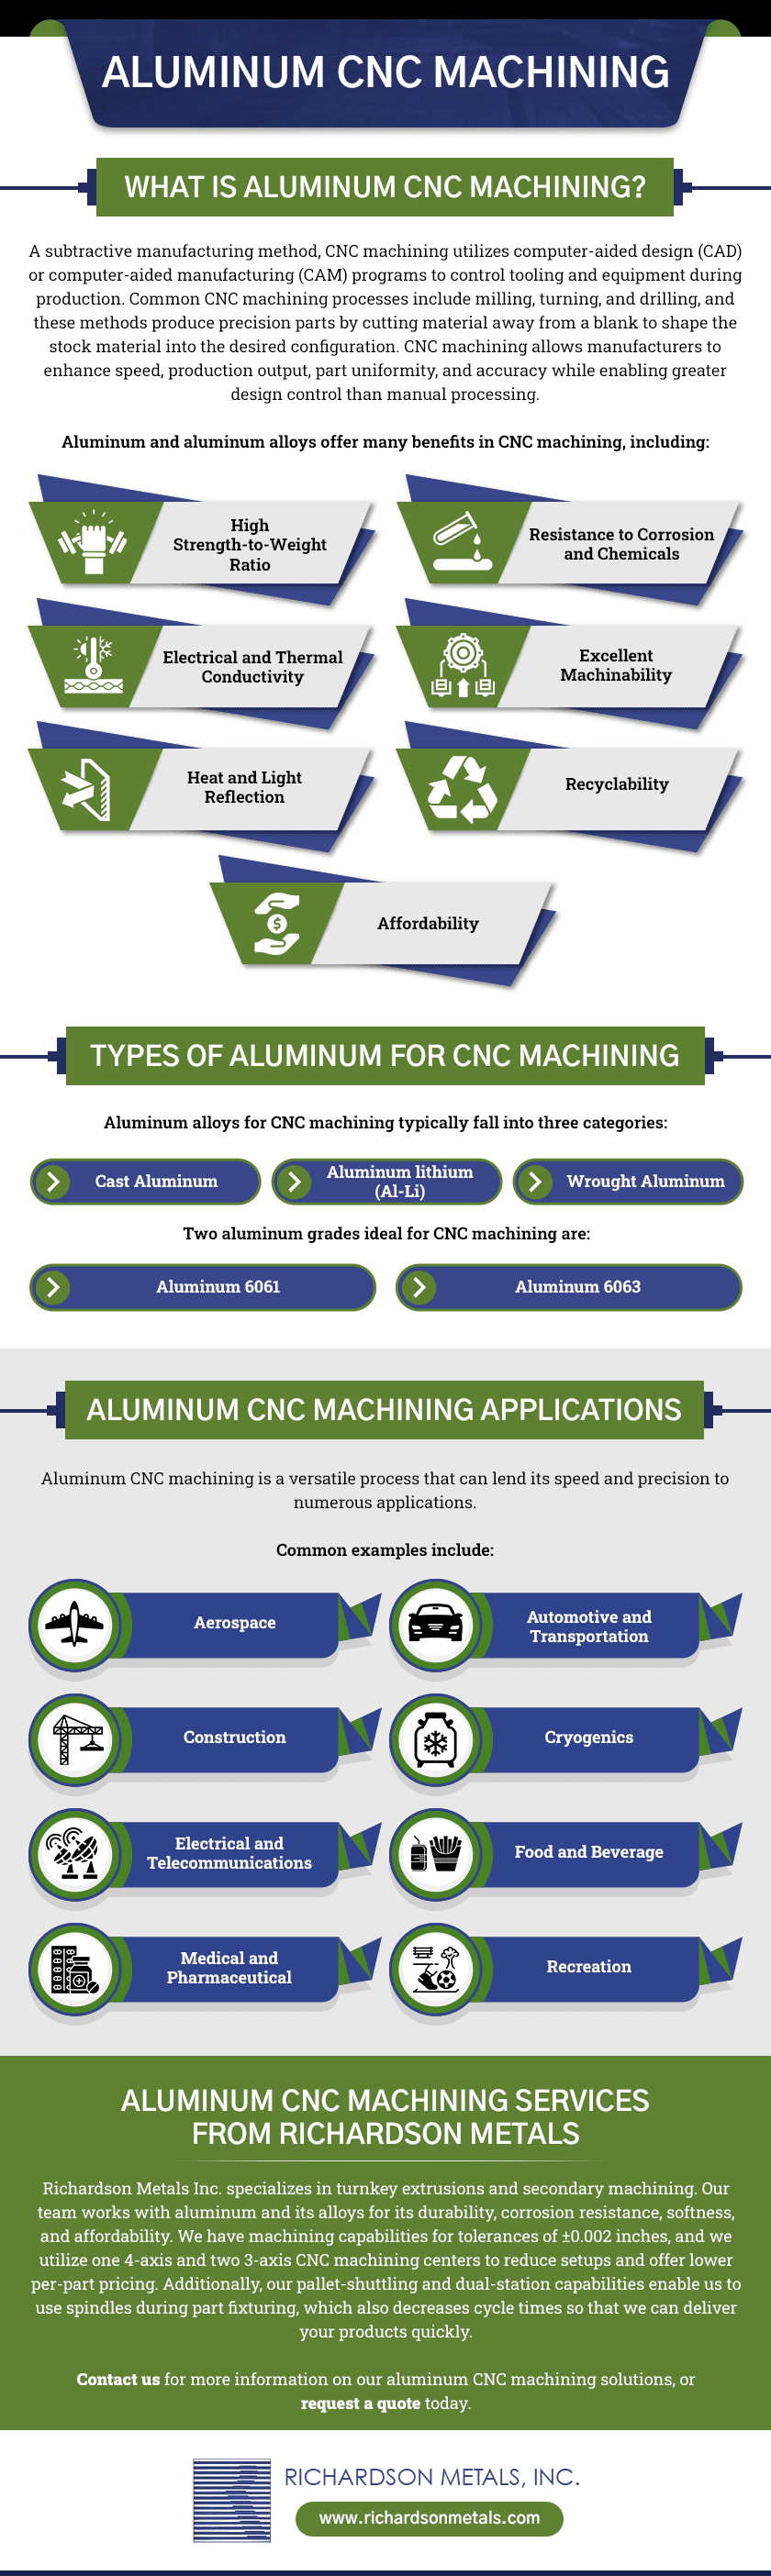 ALUMINUM CNC MACHINING